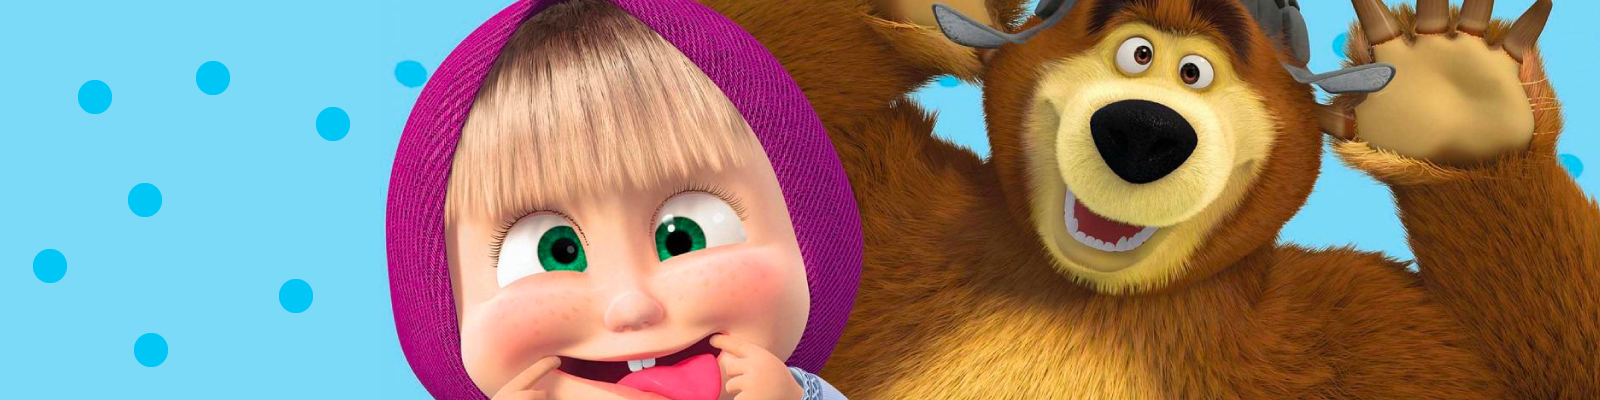 Masha e orso personaggi russe dei film animati, bambole matrioska